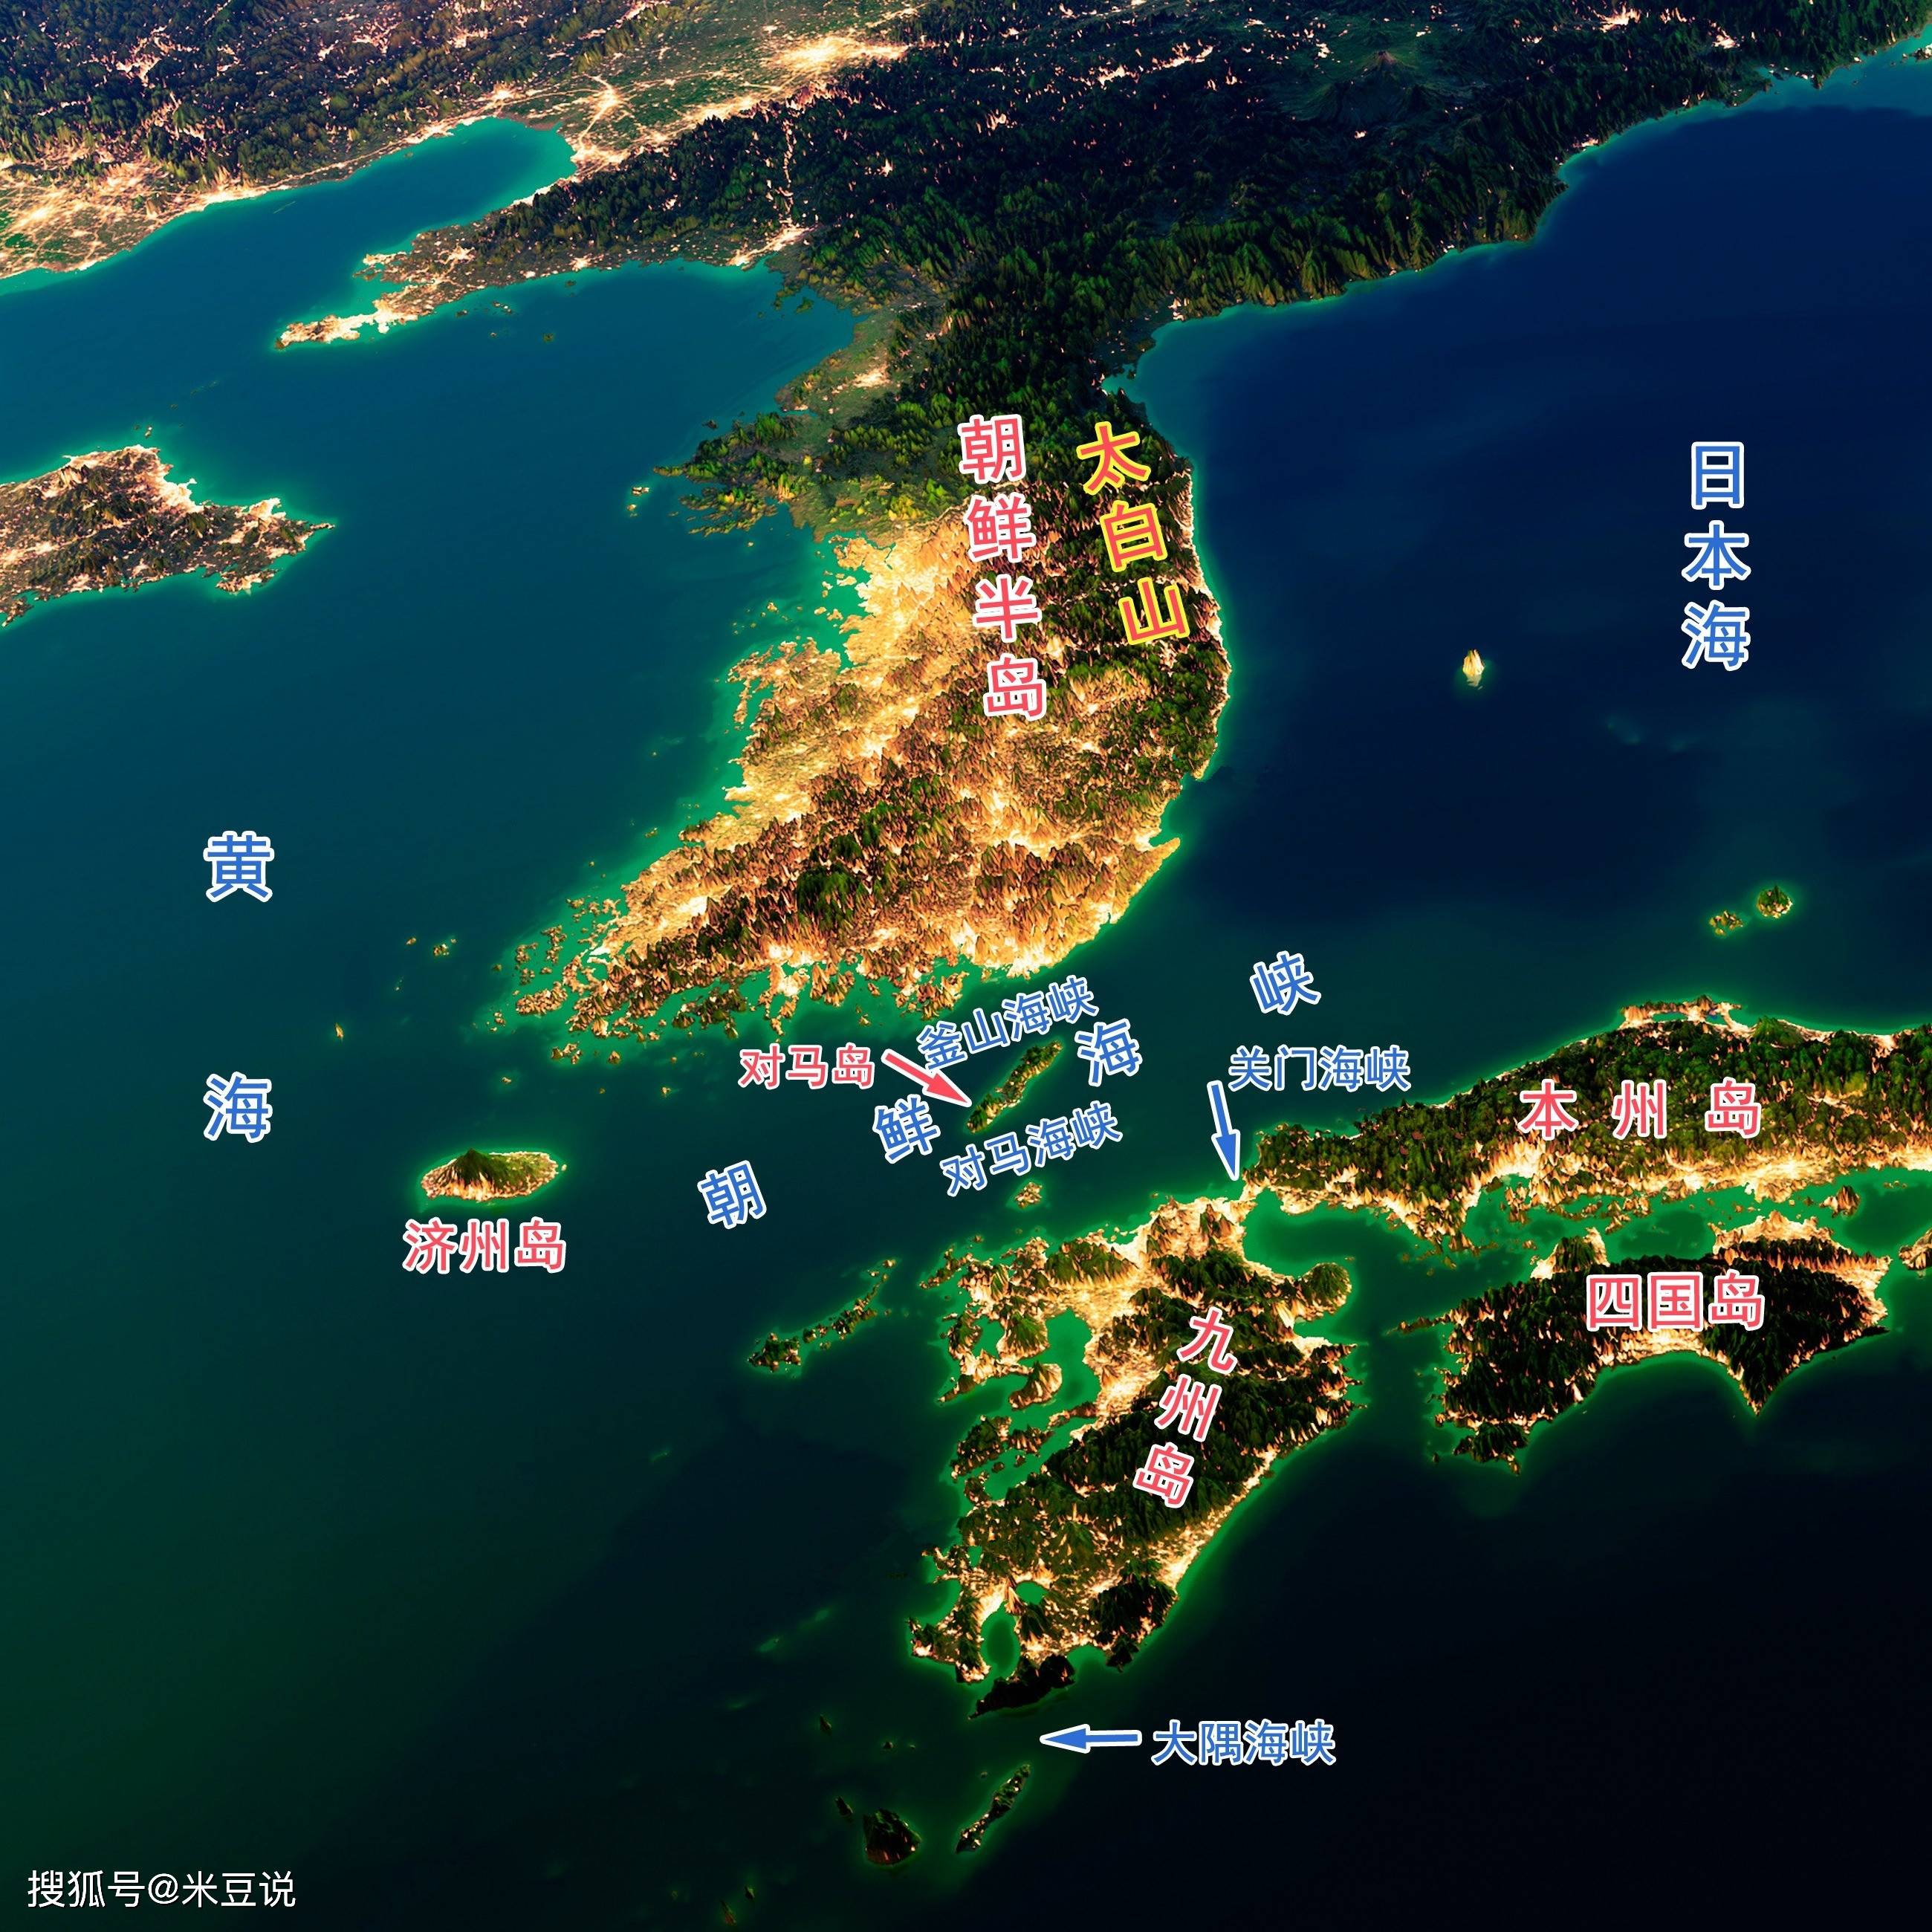 西南可以直抵东海;向西经朝鲜半岛西南部与济州岛之间的济州海峡通进